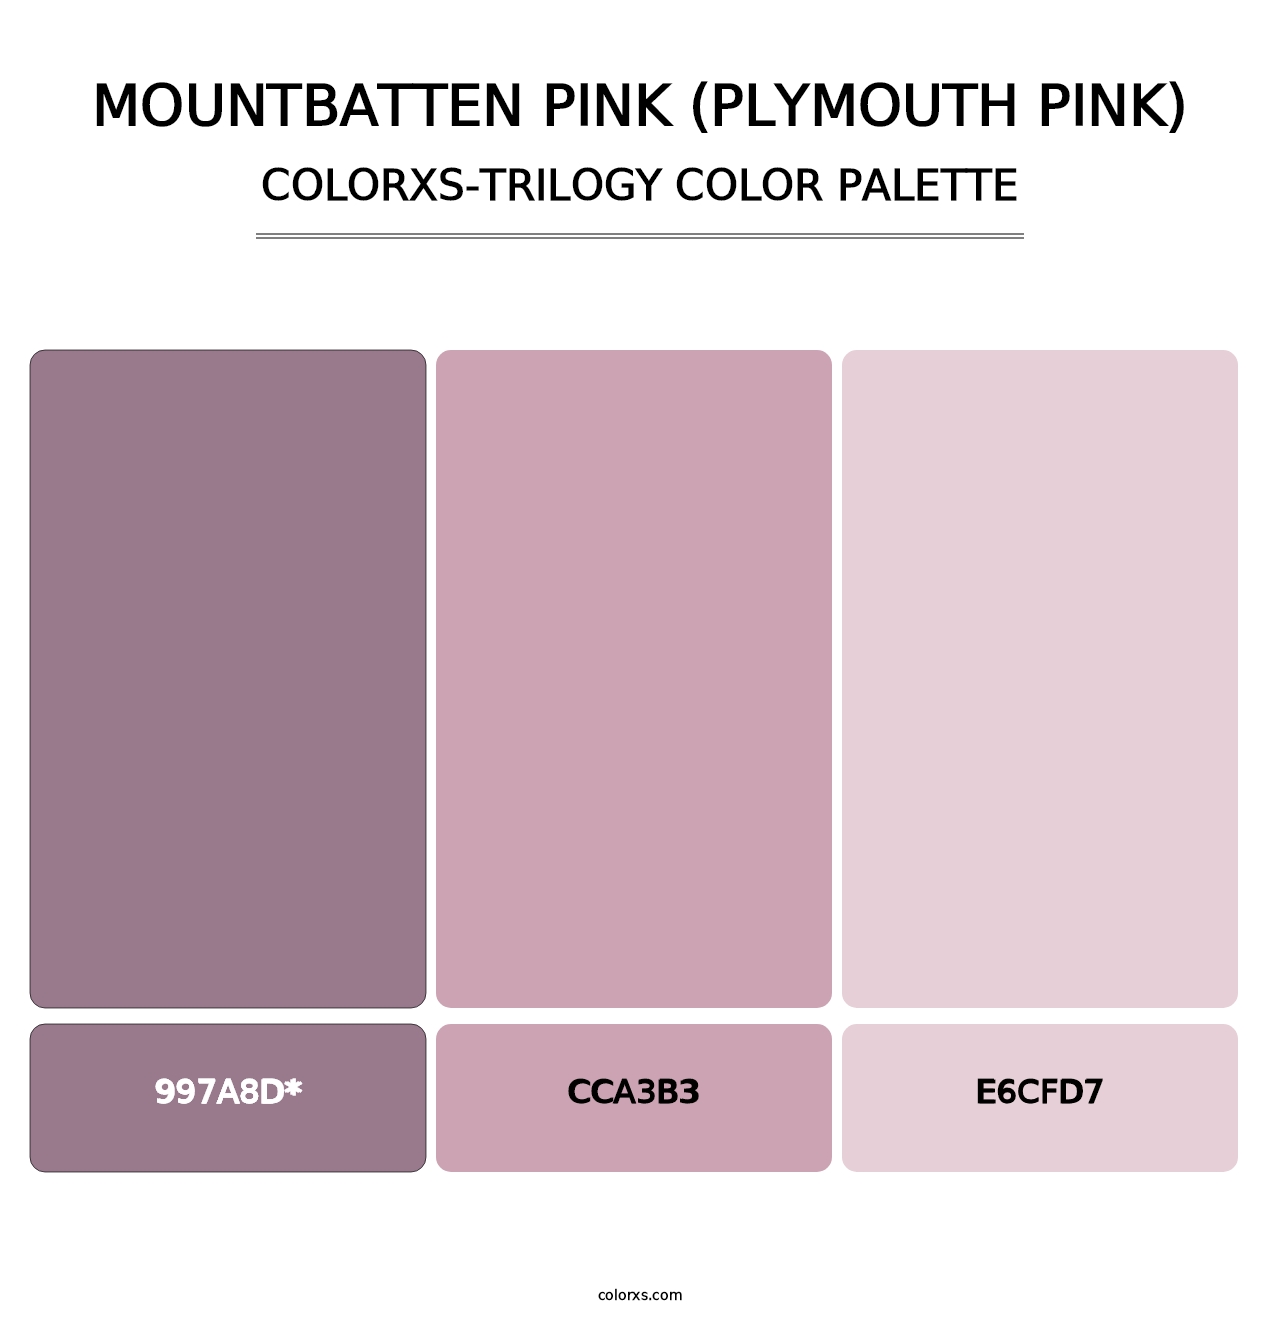 Mountbatten Pink (Plymouth Pink) - Colorxs Trilogy Palette